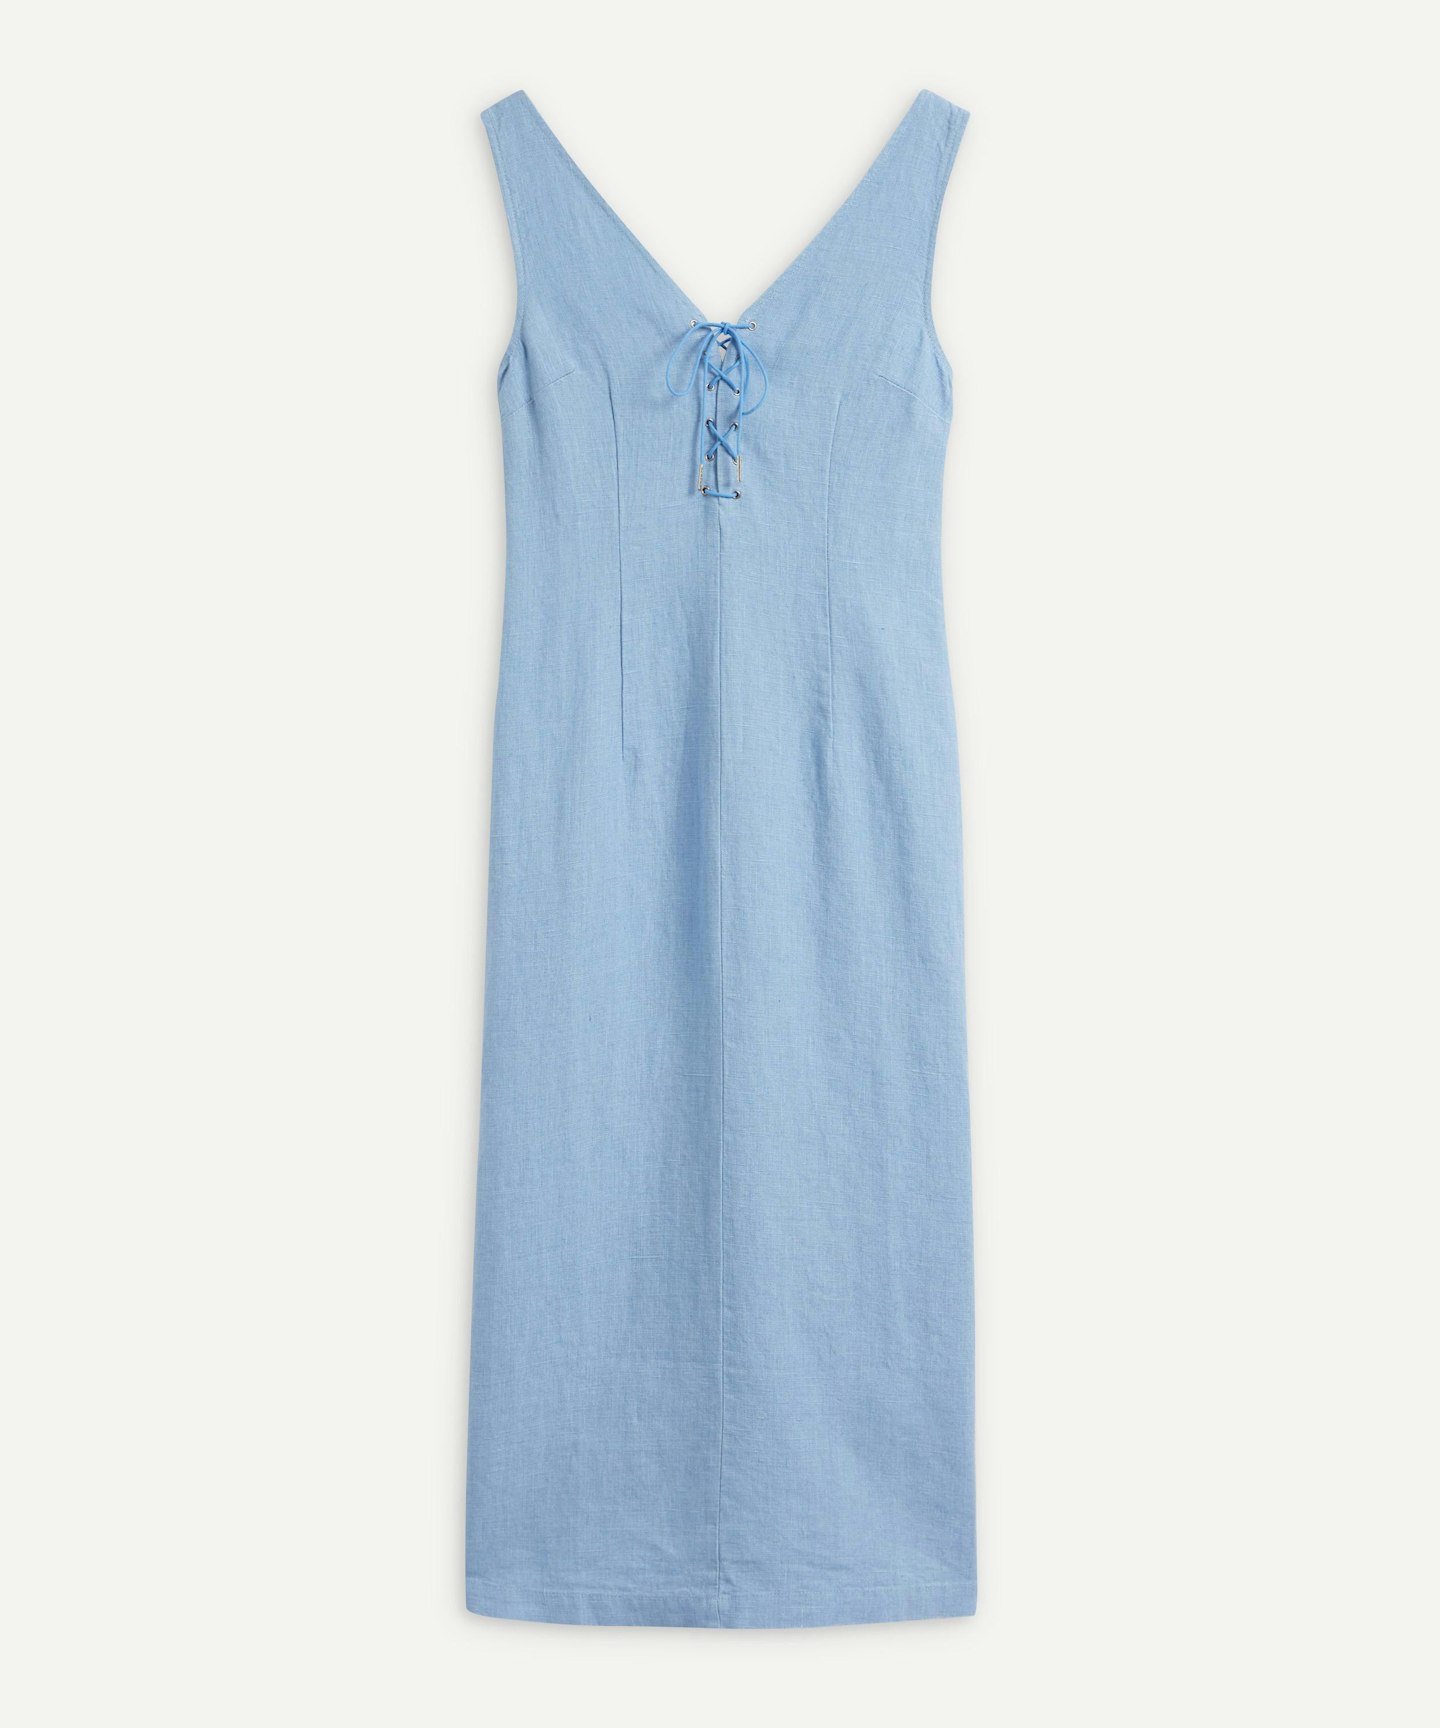 Paloma Wool, Emma Lace-Up Dress, £140